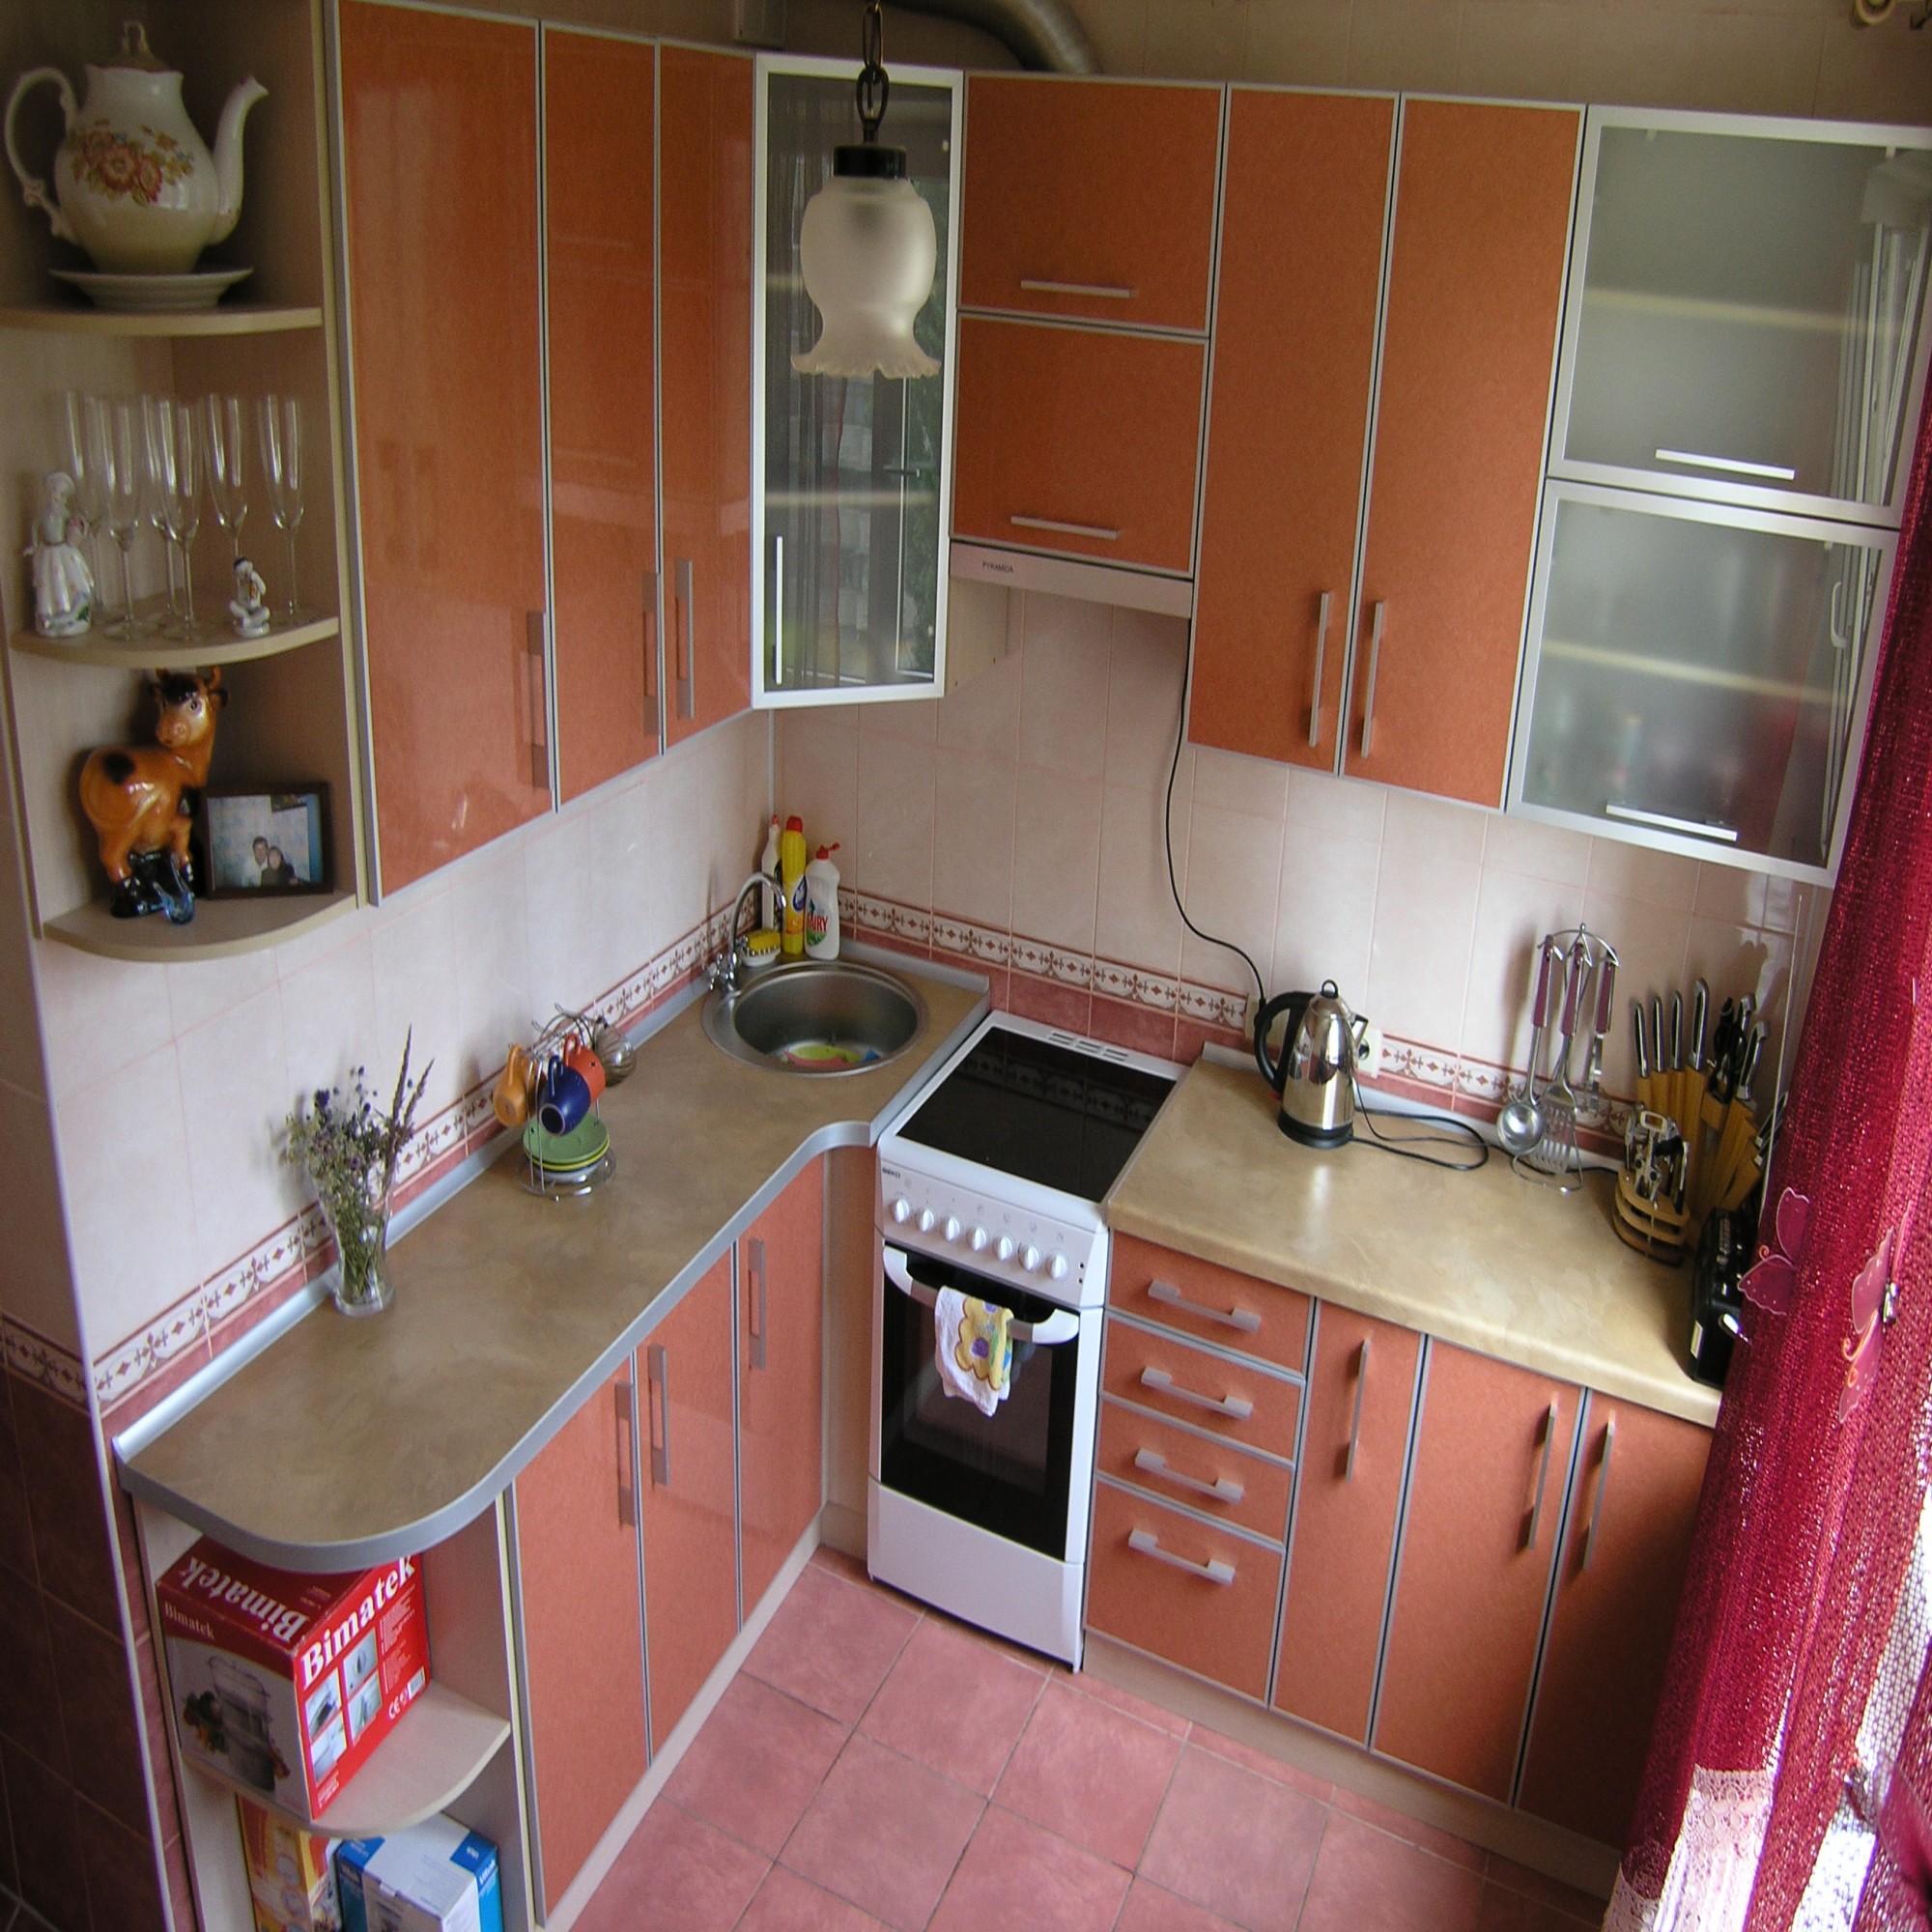  кухонной мебели в маленькой кухне - 88 фото